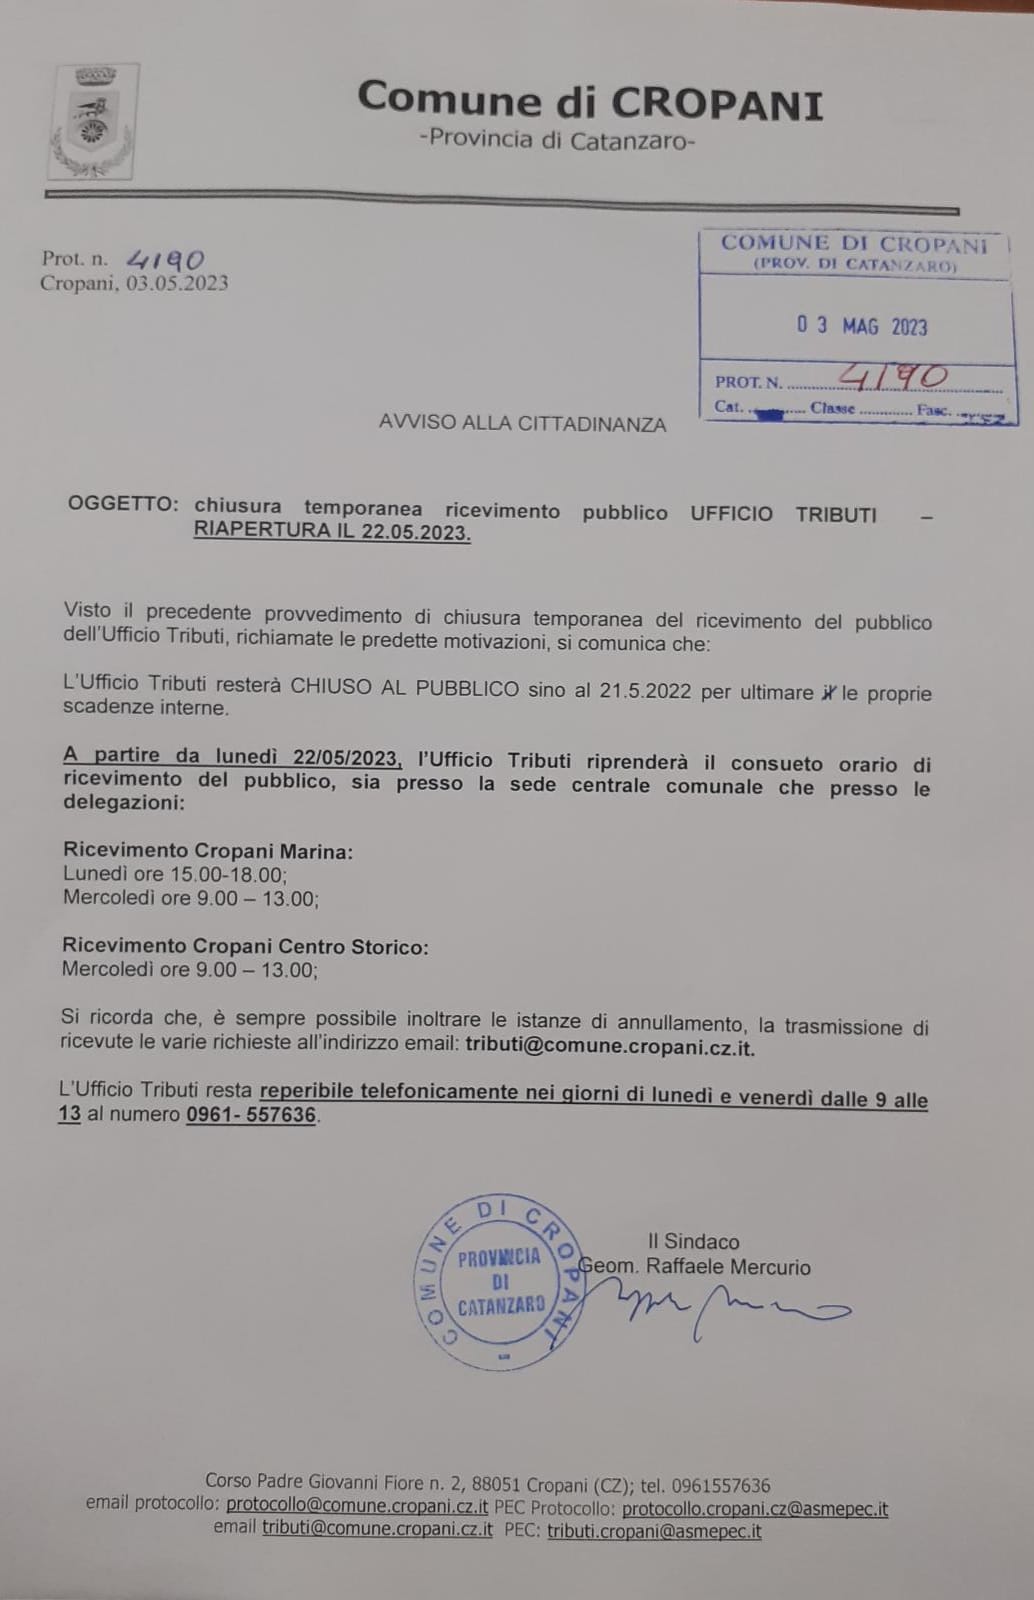 Chiusura temporanea ricevimento pubblico UFFICIO TRIBUTI - RIAPERTURA 22.05.2023